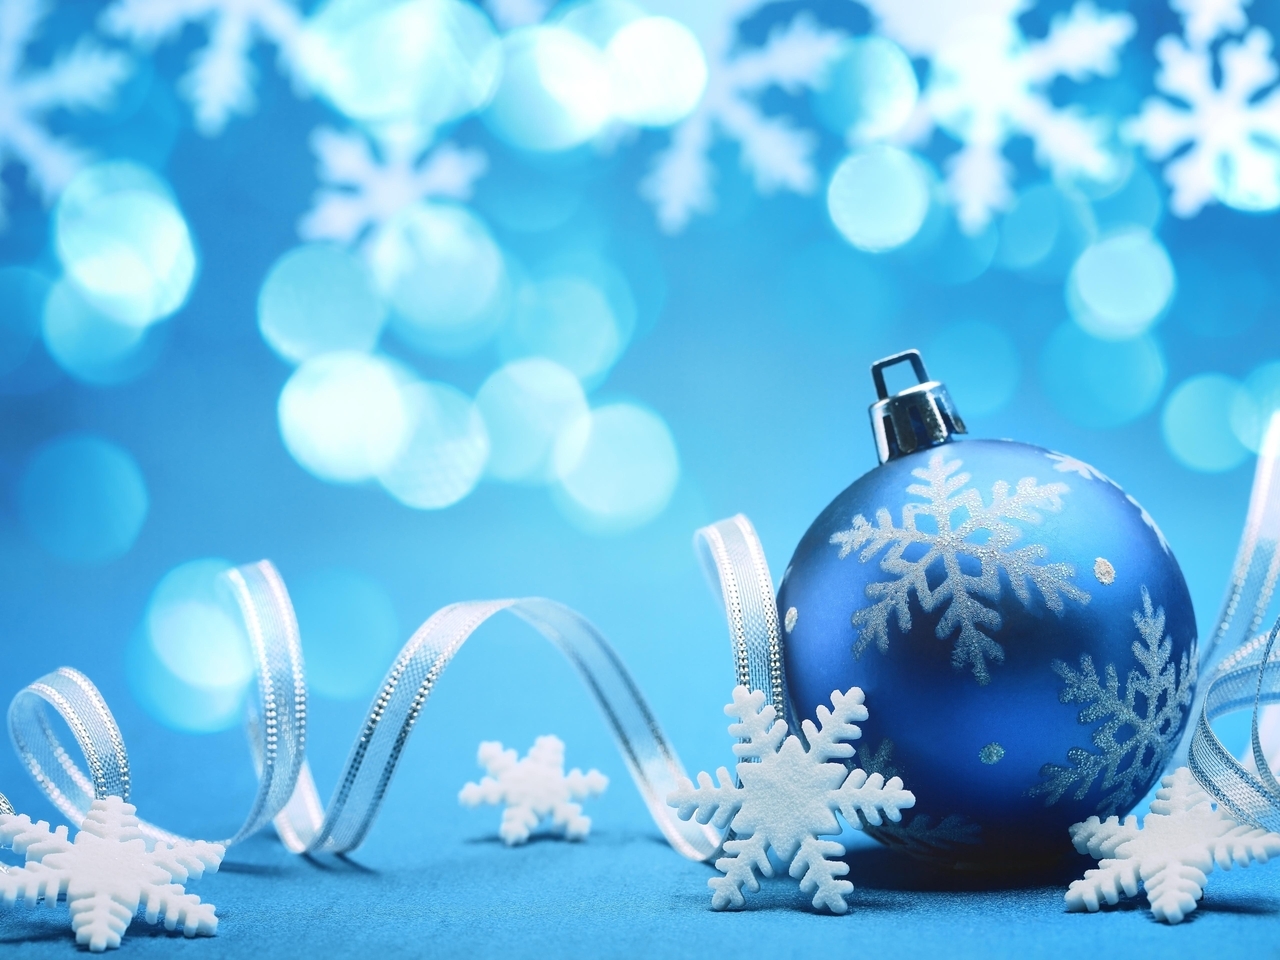 Картинка: Новый год, шар, игрушка, ленточка, голубой фон, снежинки